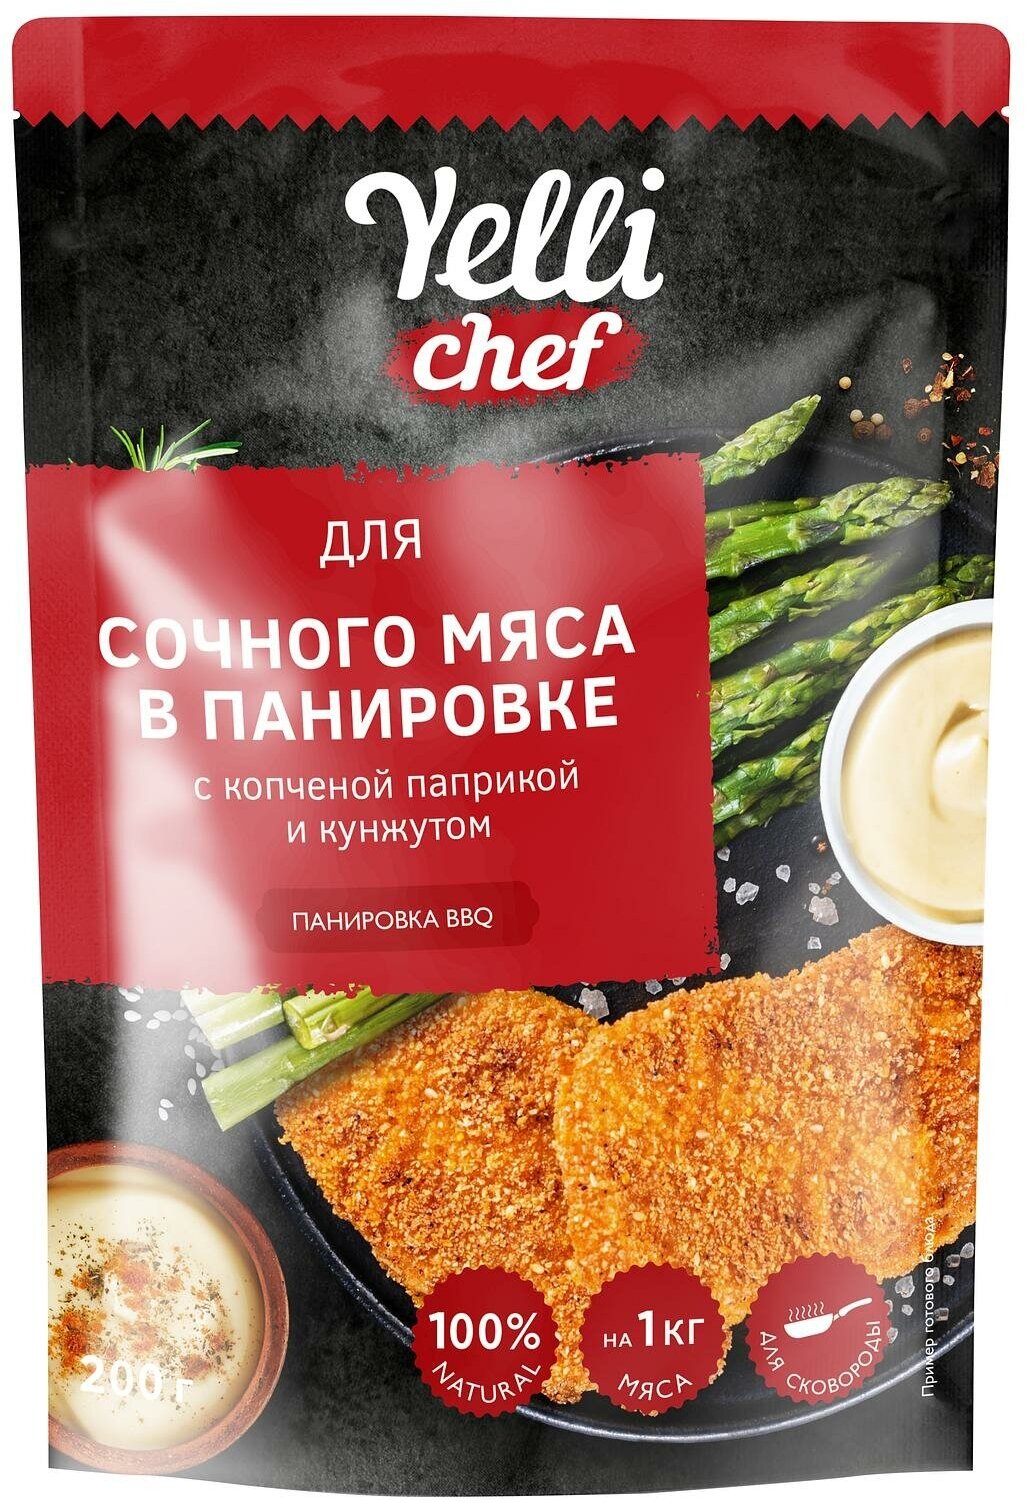 Упаковка из 8 пачек Панировка Yelli Chef BBQ для сочного мяса 200г